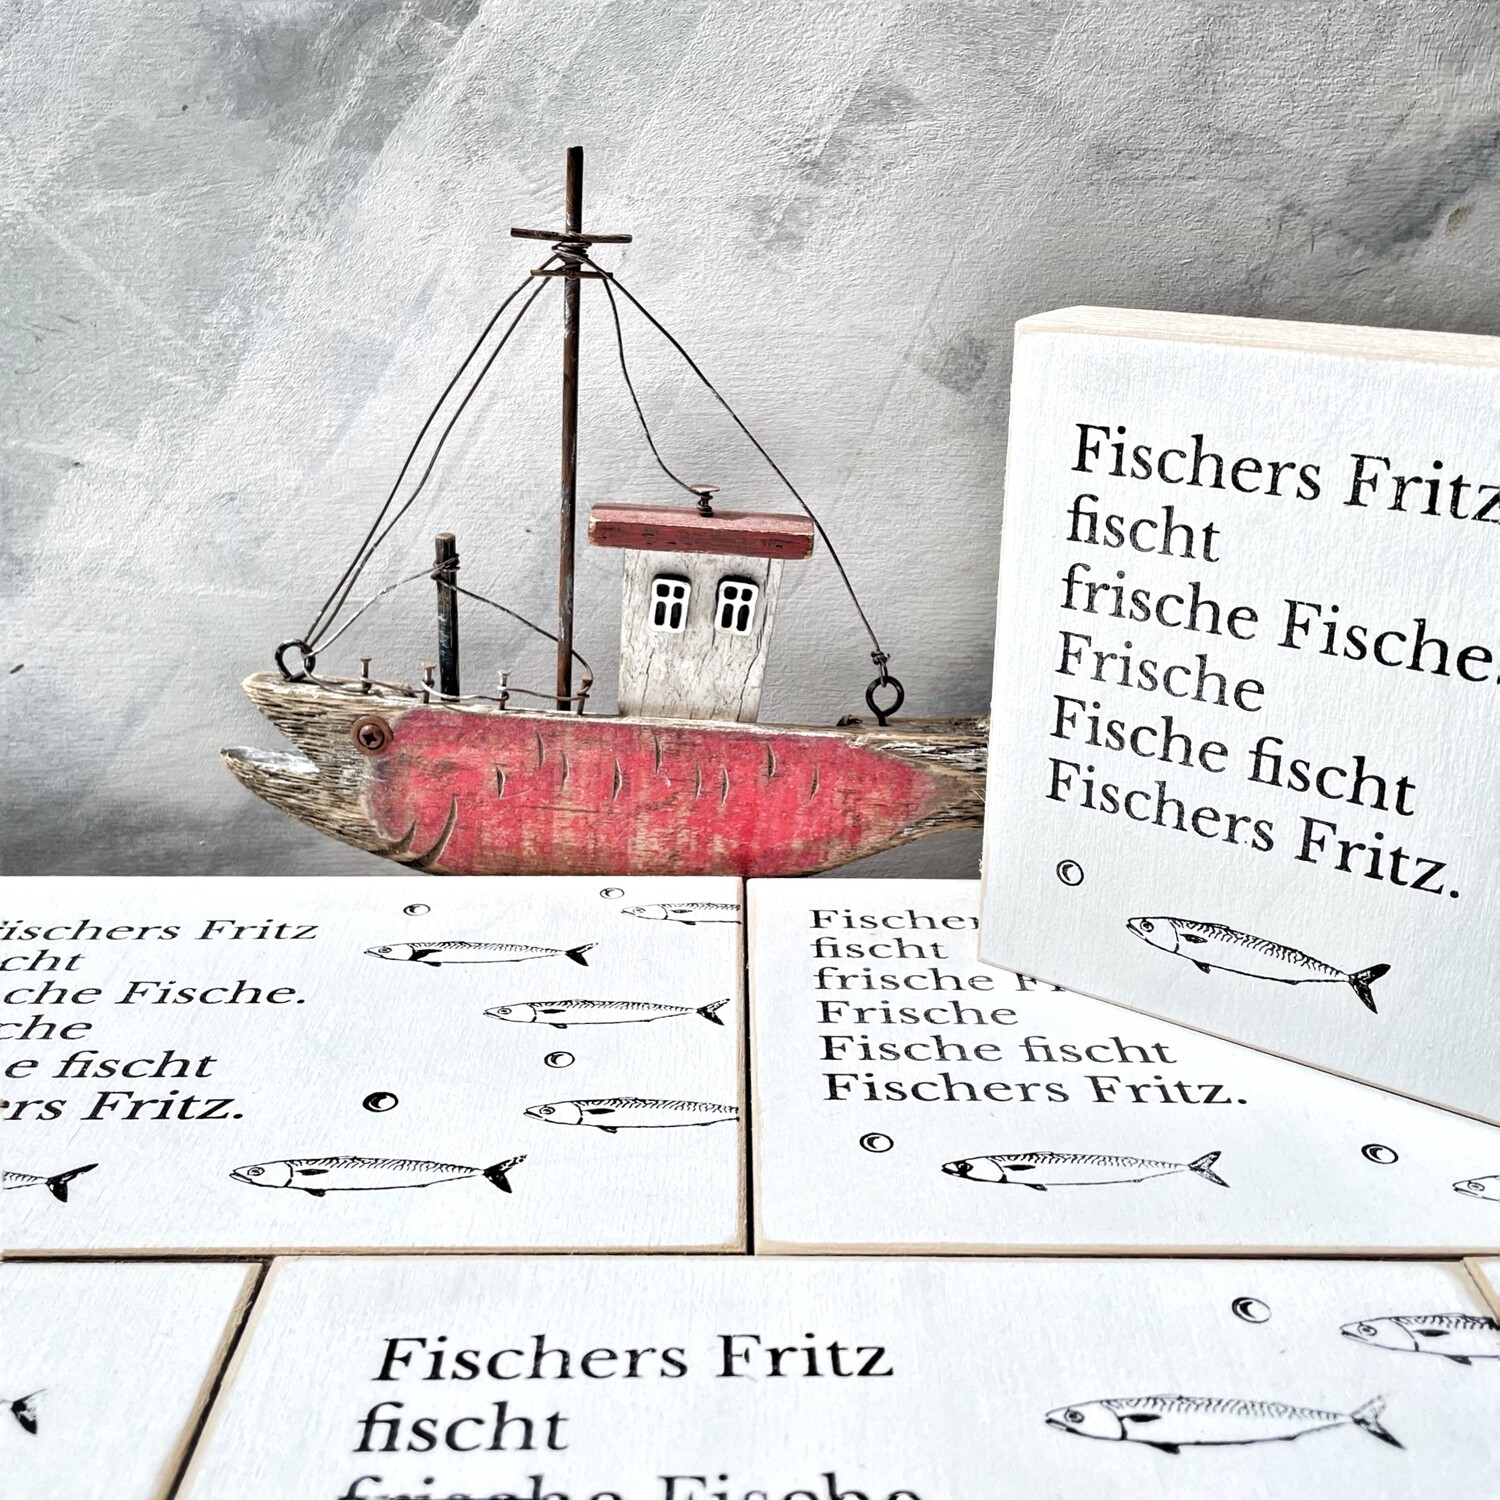 Schild "Fischers Fritz fischt..."